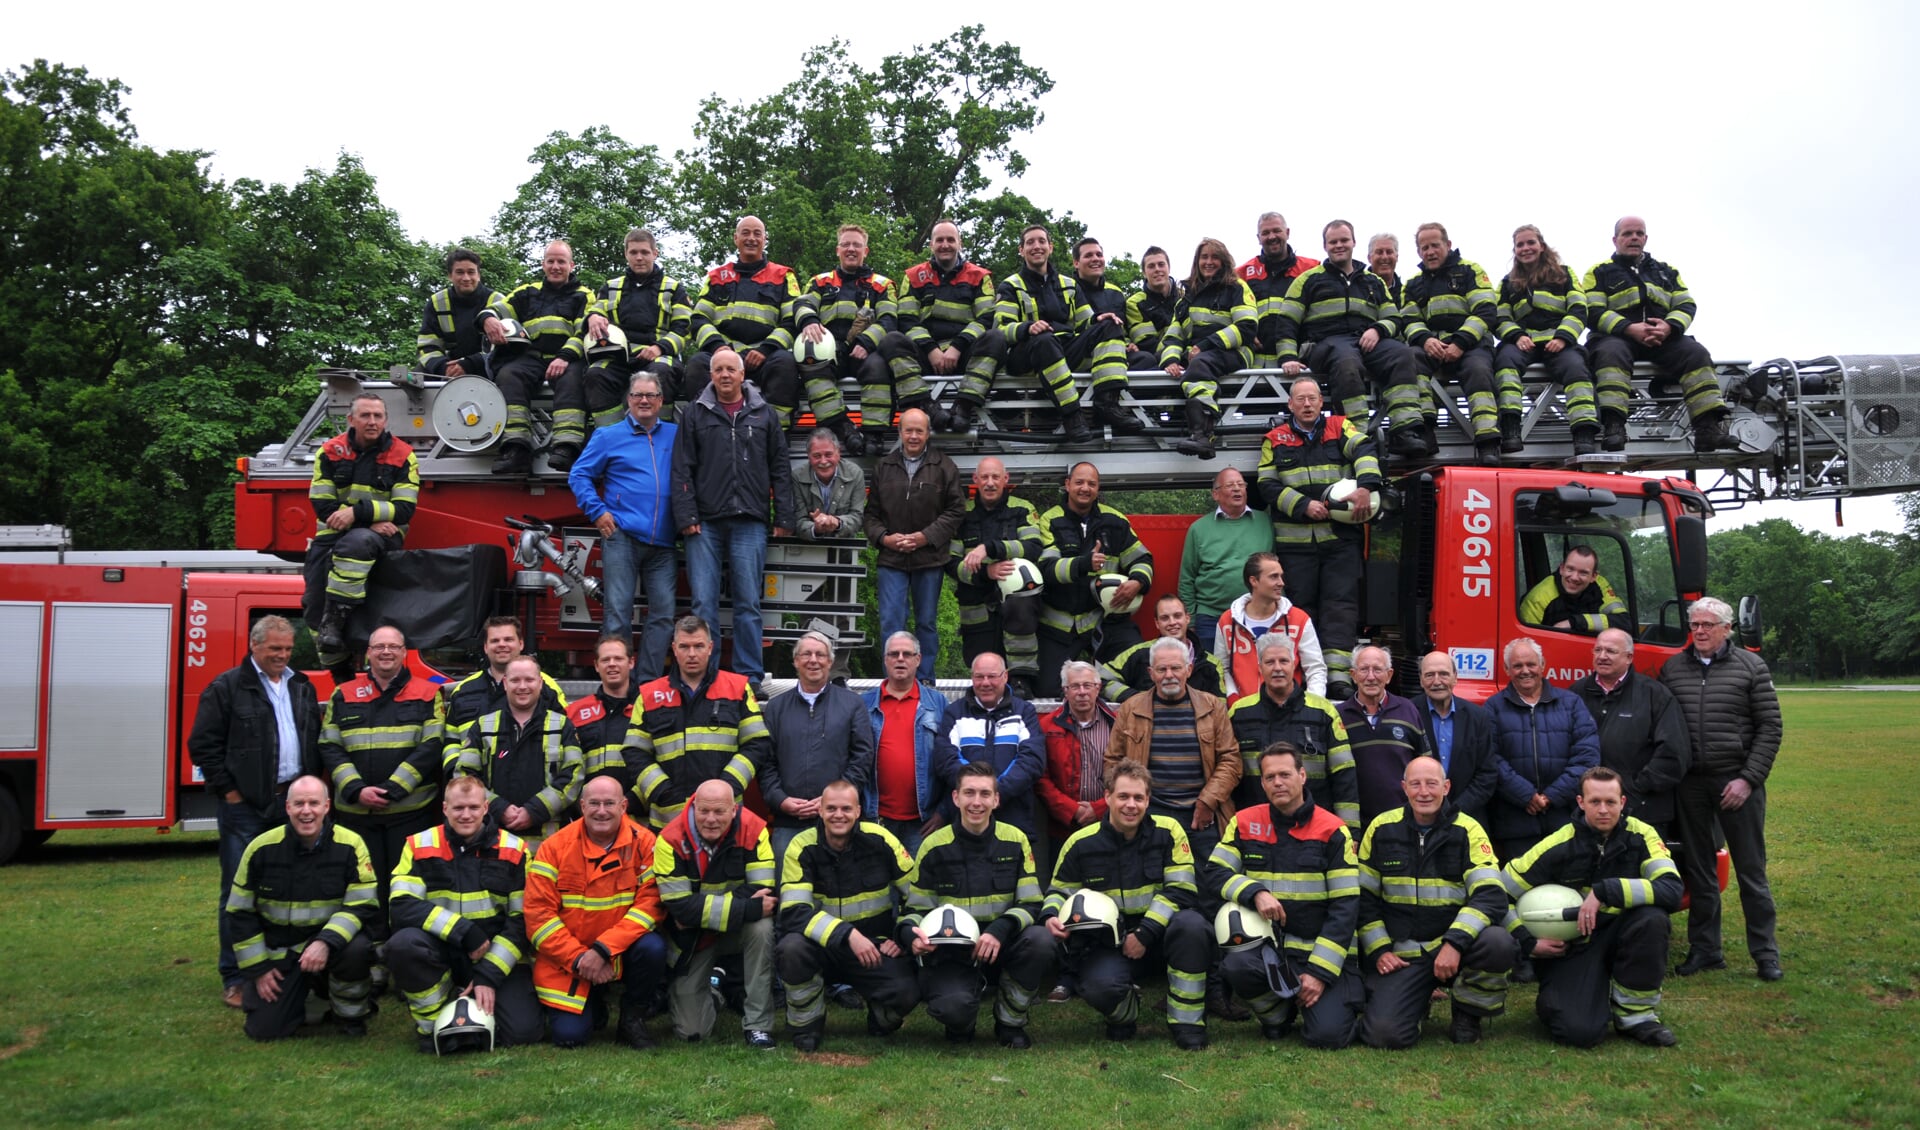 De leden van de jubilerende Biltse brandweer samen met hun oud leden.